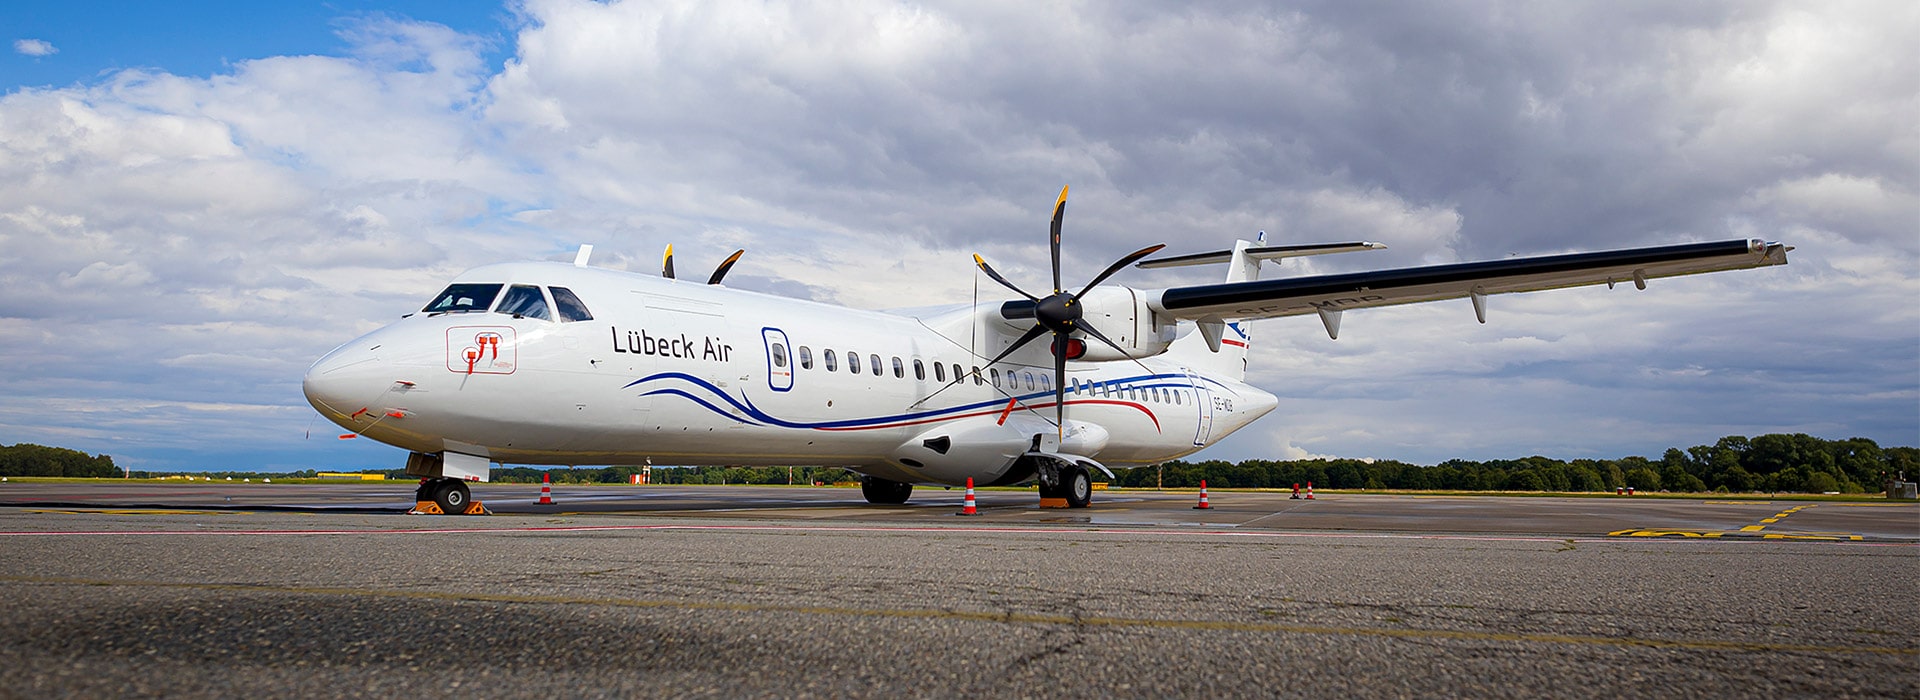 Lübeck Air ATR 72-500